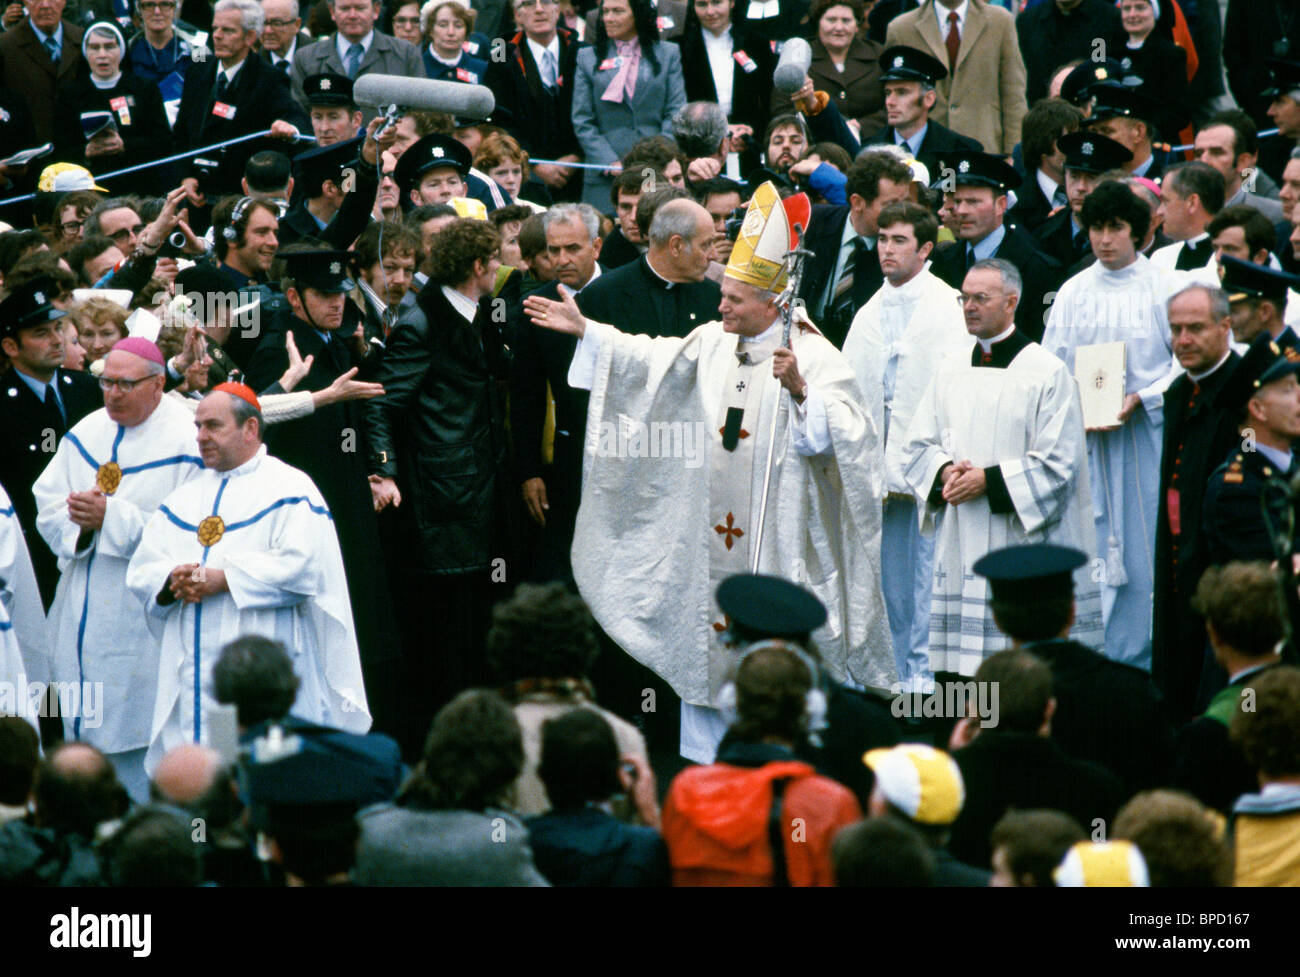 Le Pape Jean Paul II arrive à célébrer la Messe à vibrations lors de sa visite en Irlande Banque D'Images